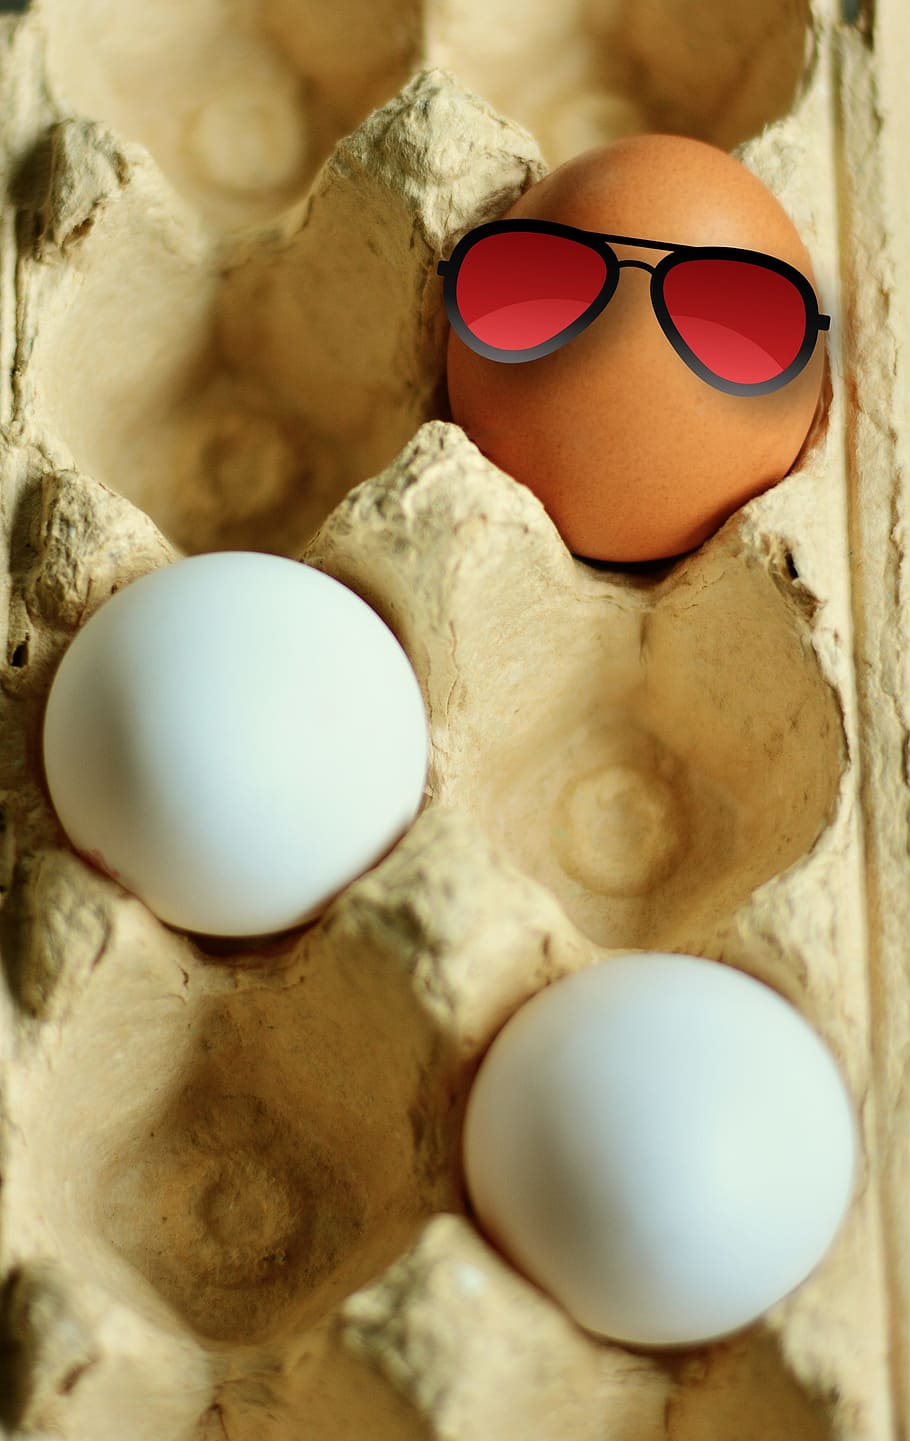 tiga, telur, baki telur, telur ayam betina, telur coklat, telur putih, pewarna, karton telur, telur mentah, kemasan telur